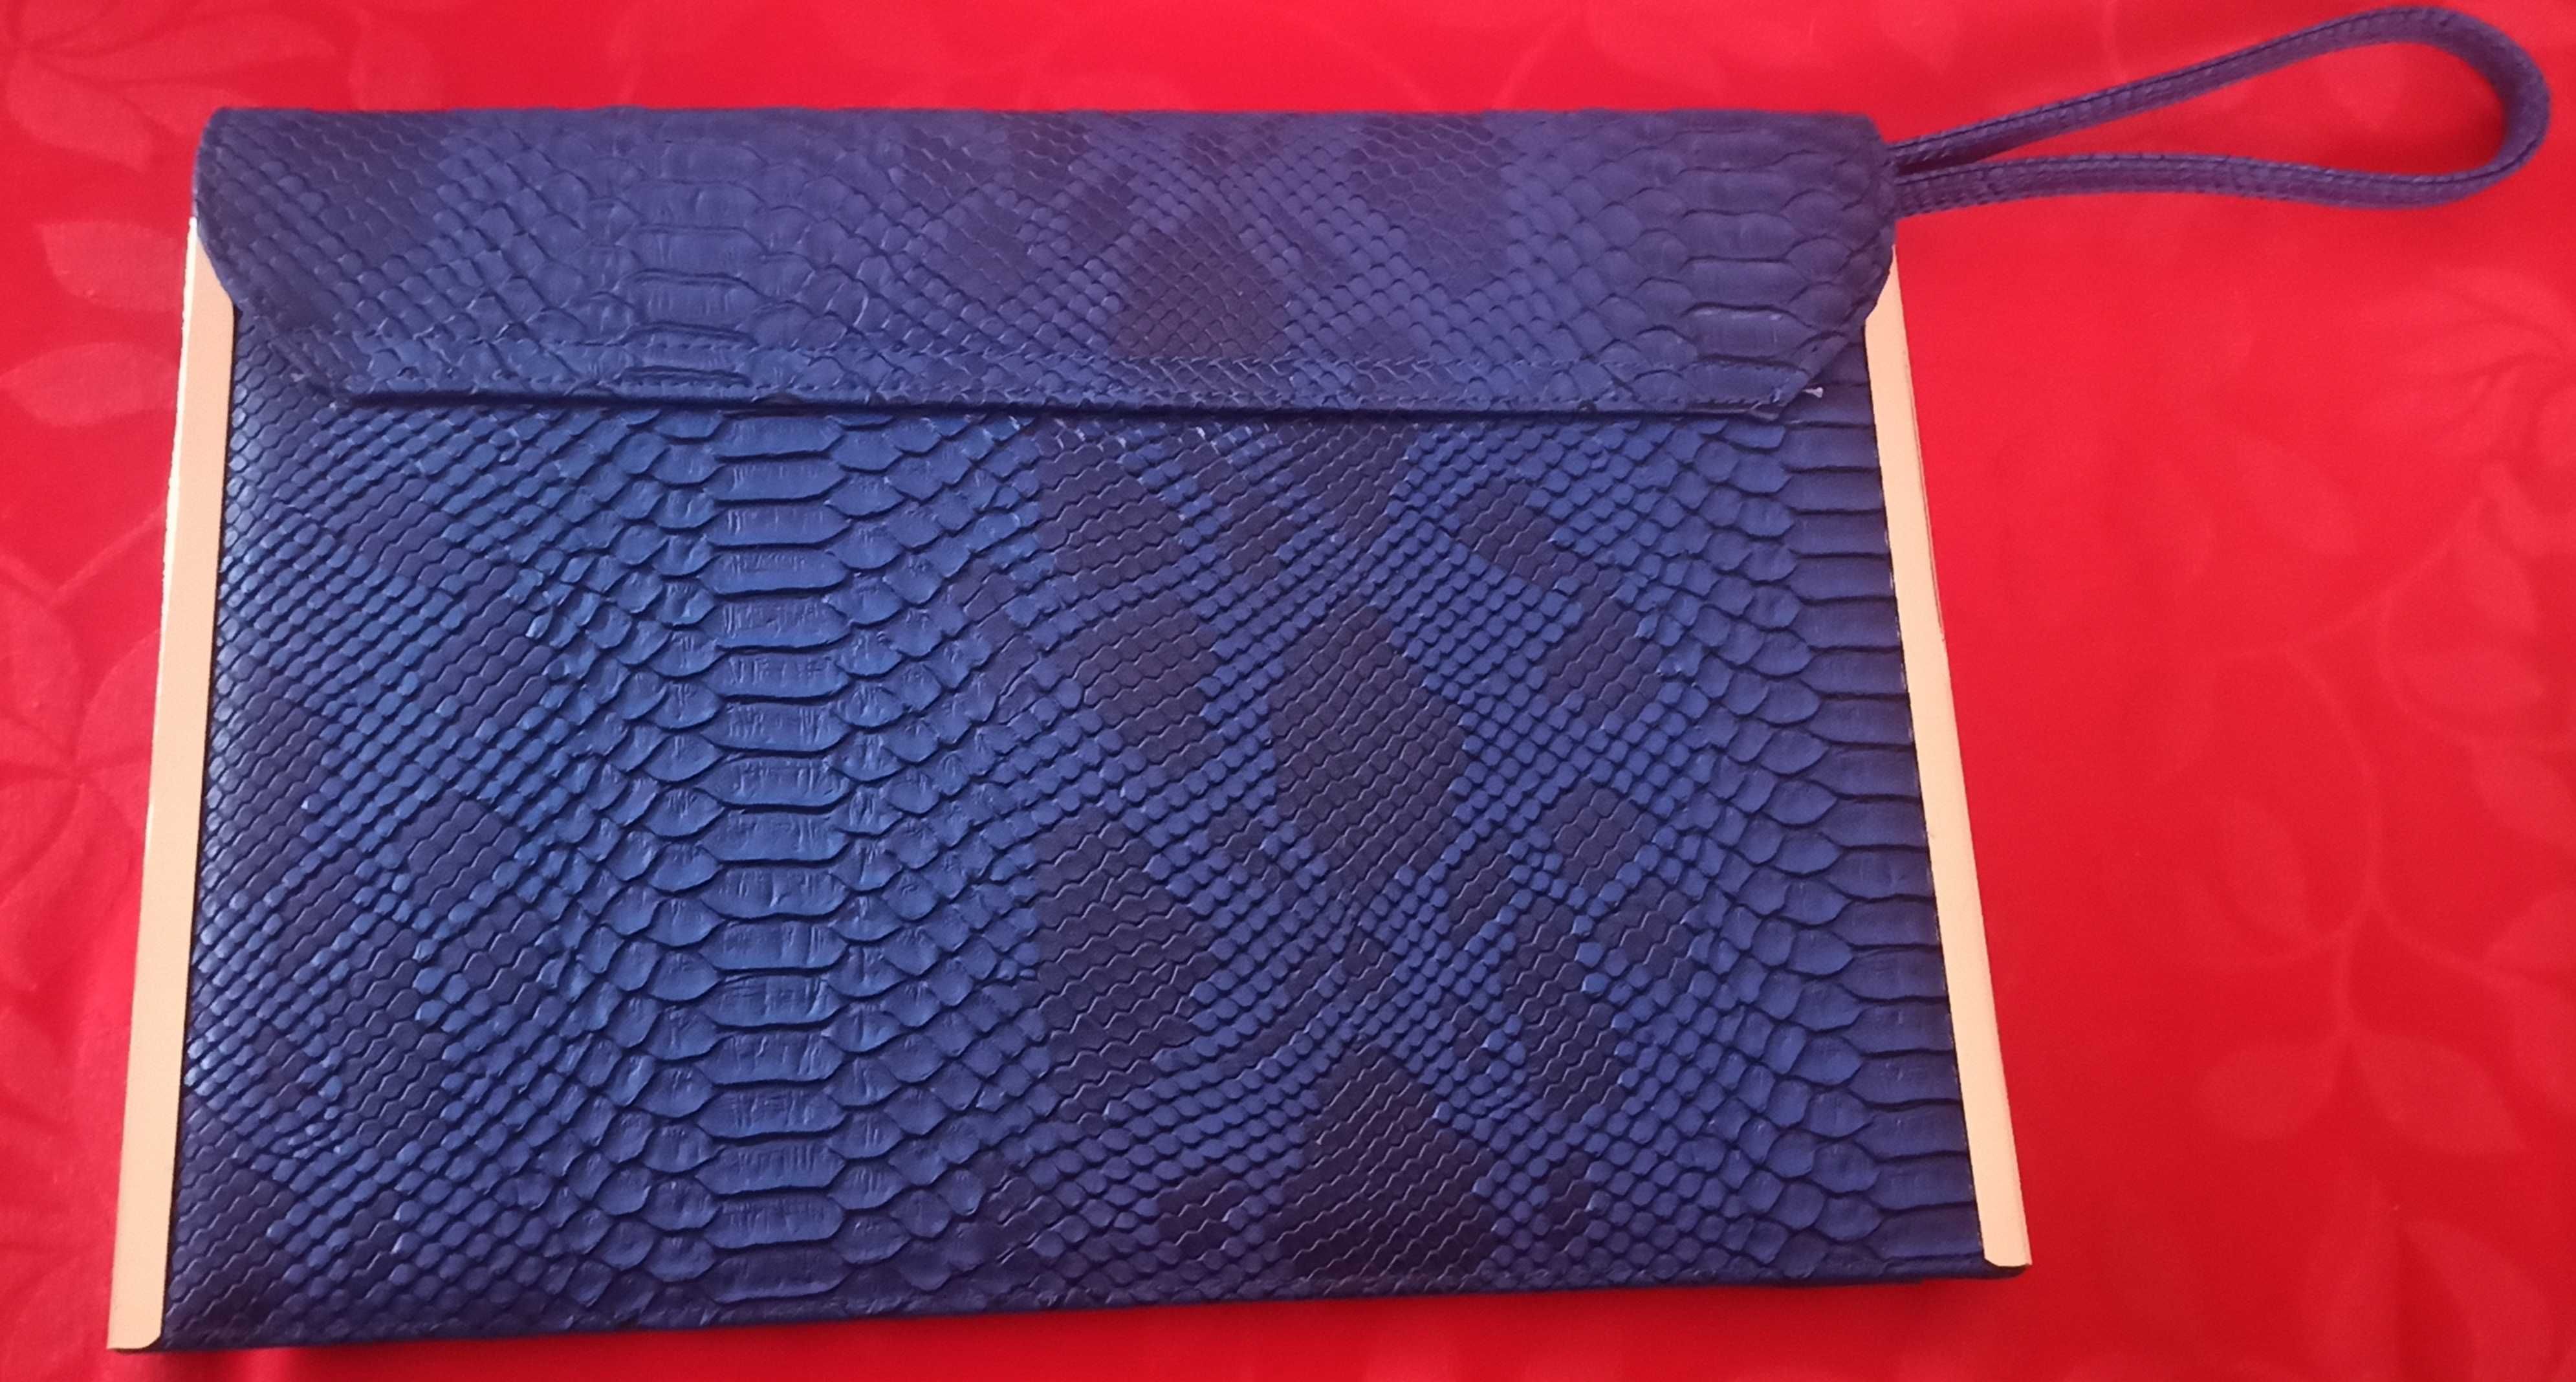 Mala Azul estilo envelope